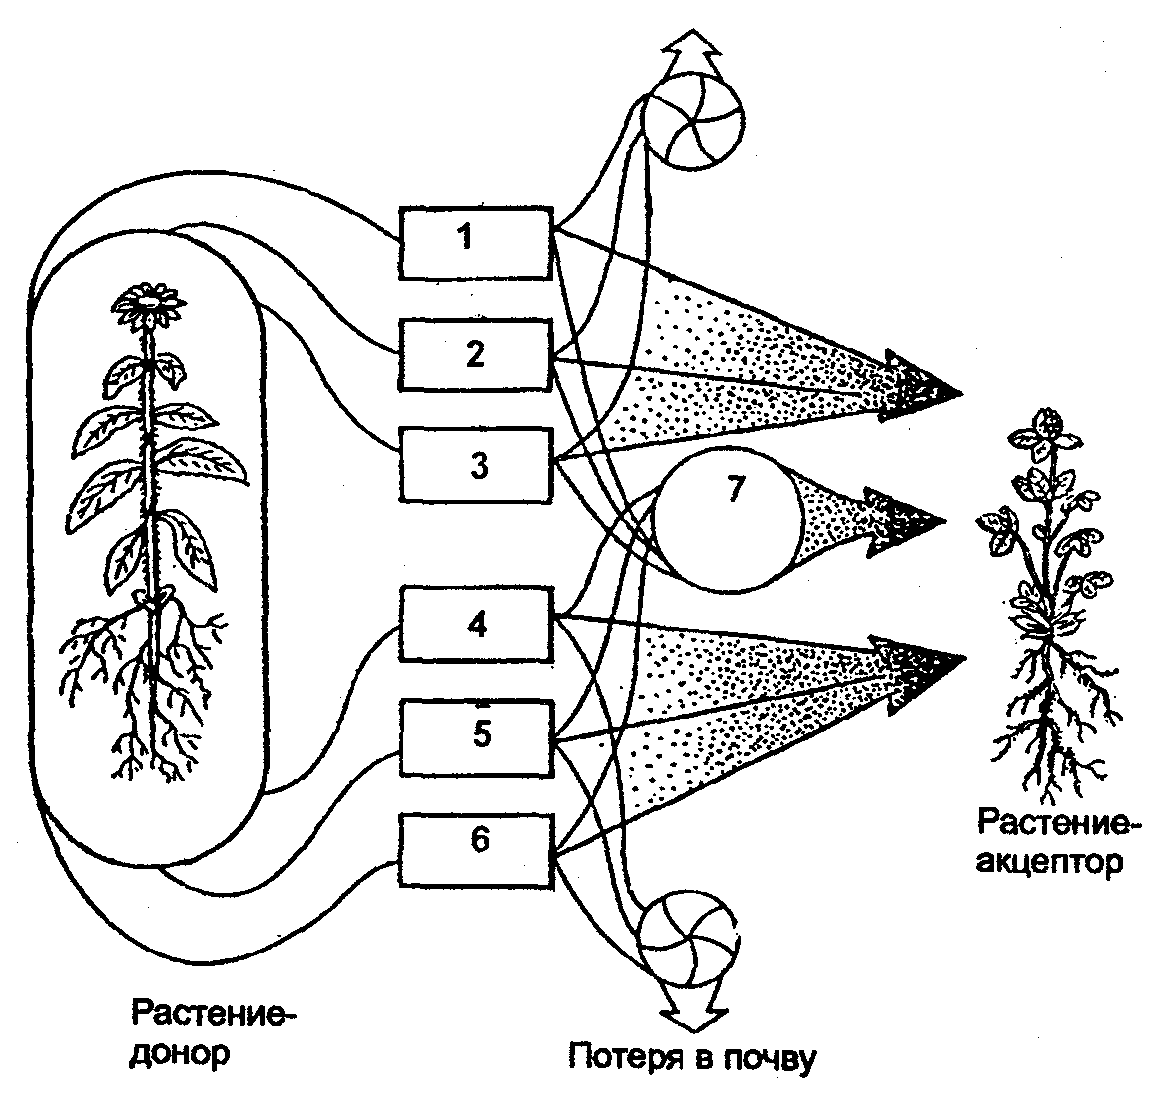 Растения доноры. Трансабиотические взаимоотношения растений. Аллелопатия схема. Взаимодействие растений. Аллелопатия растений.